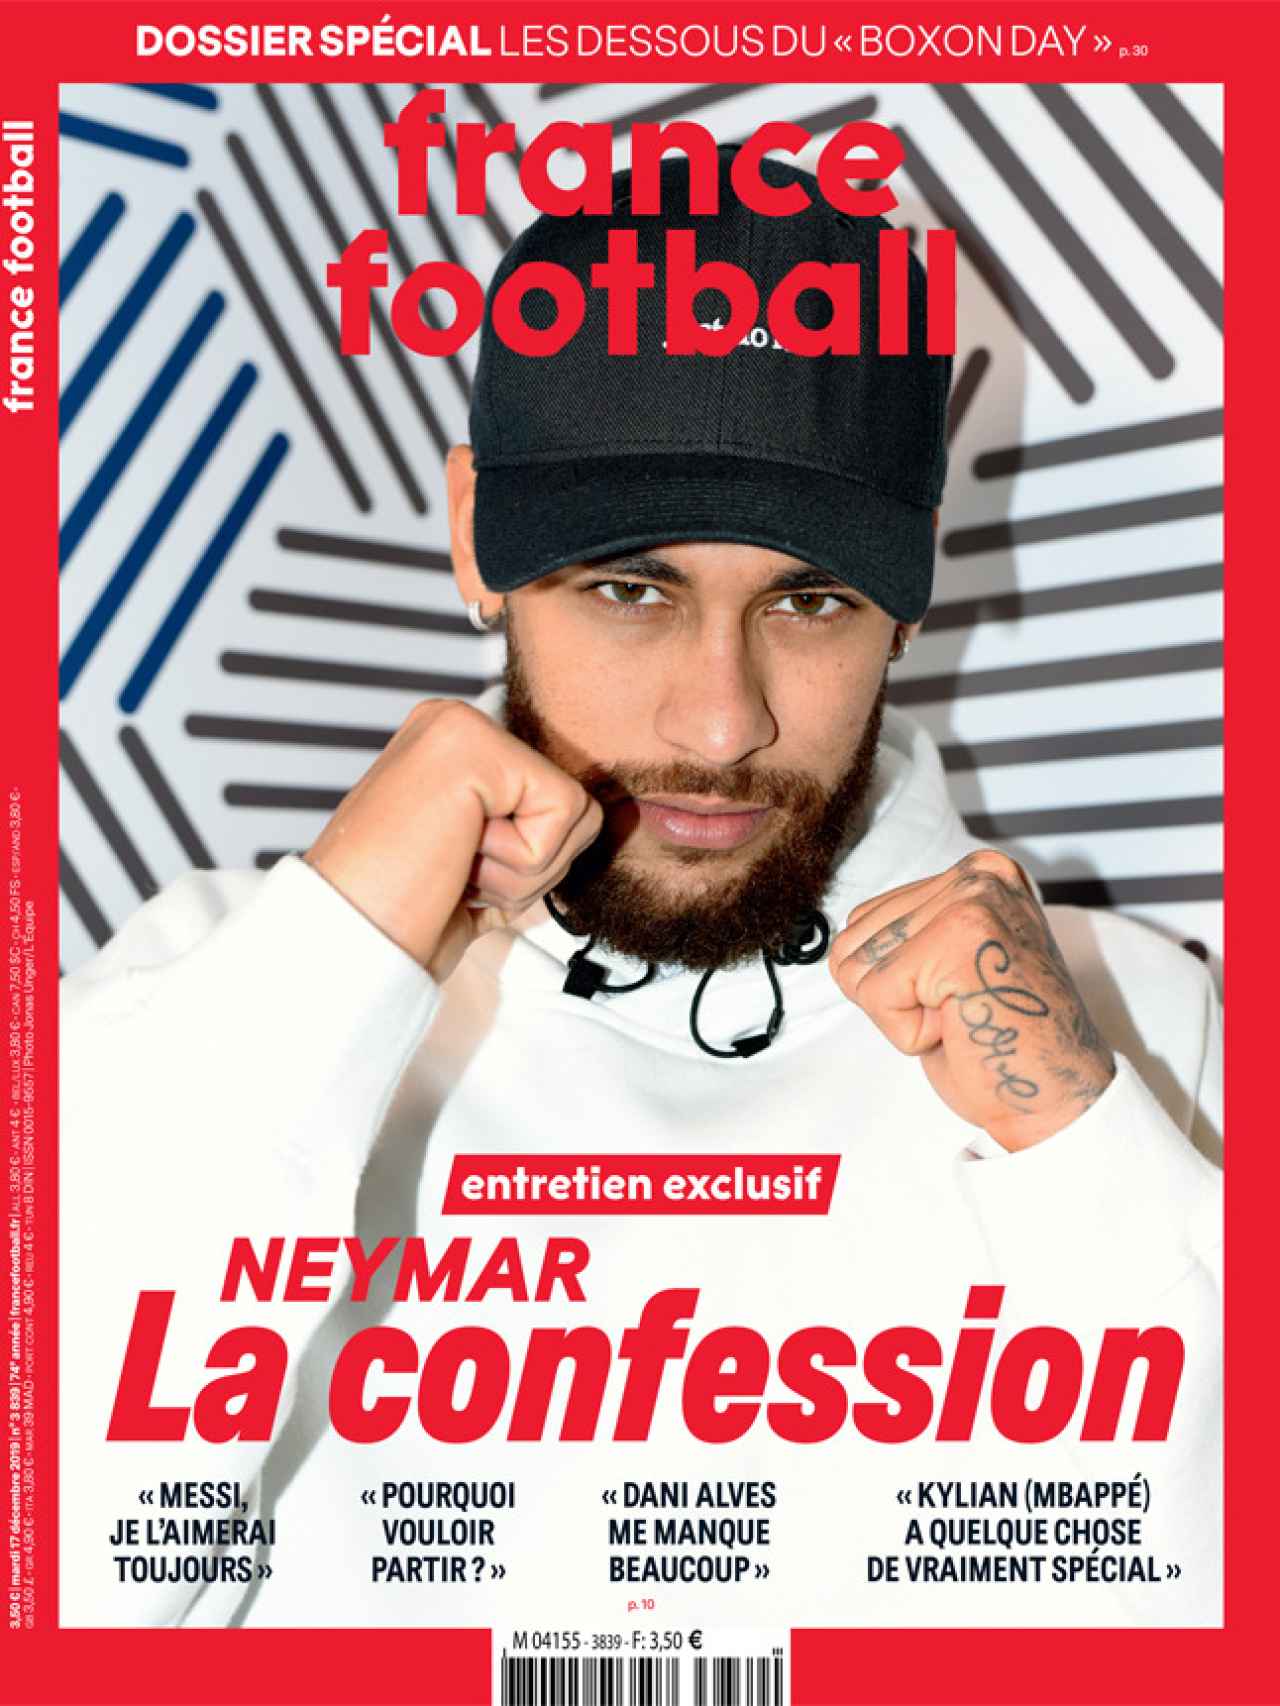 La portada de la revista France Football con la entrevista de Neymar